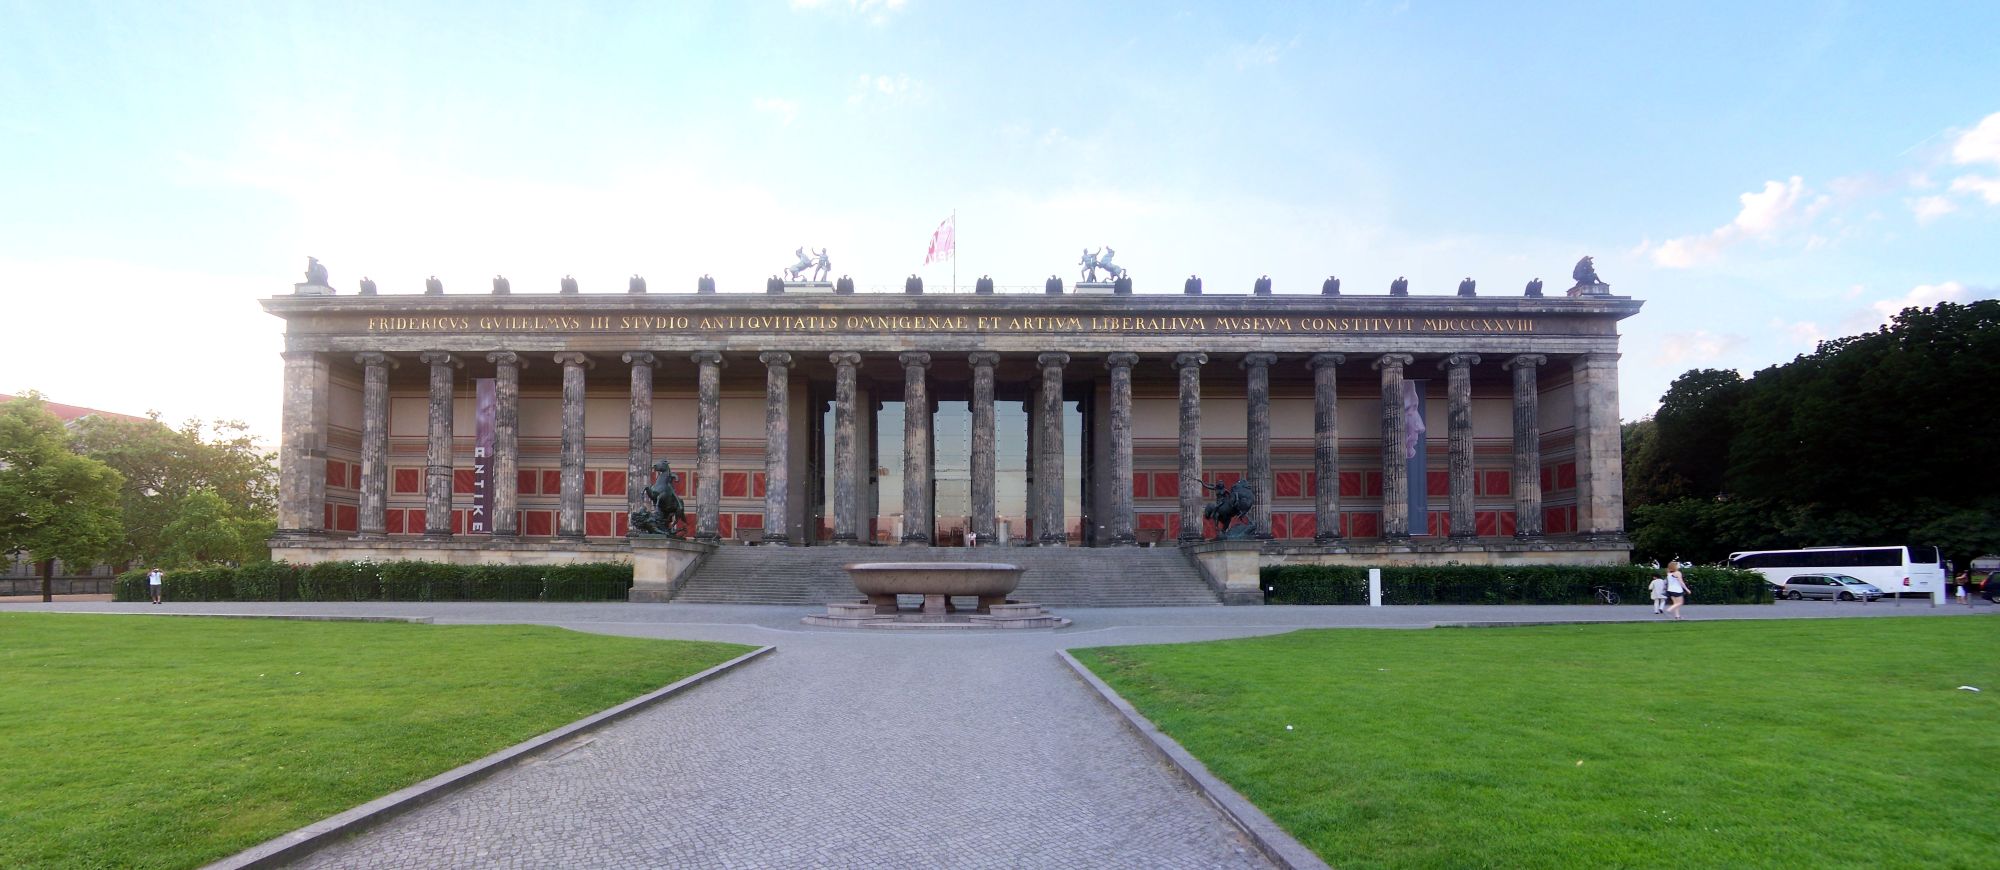 Veranstaltung Berlin: Altes Museum Berlin